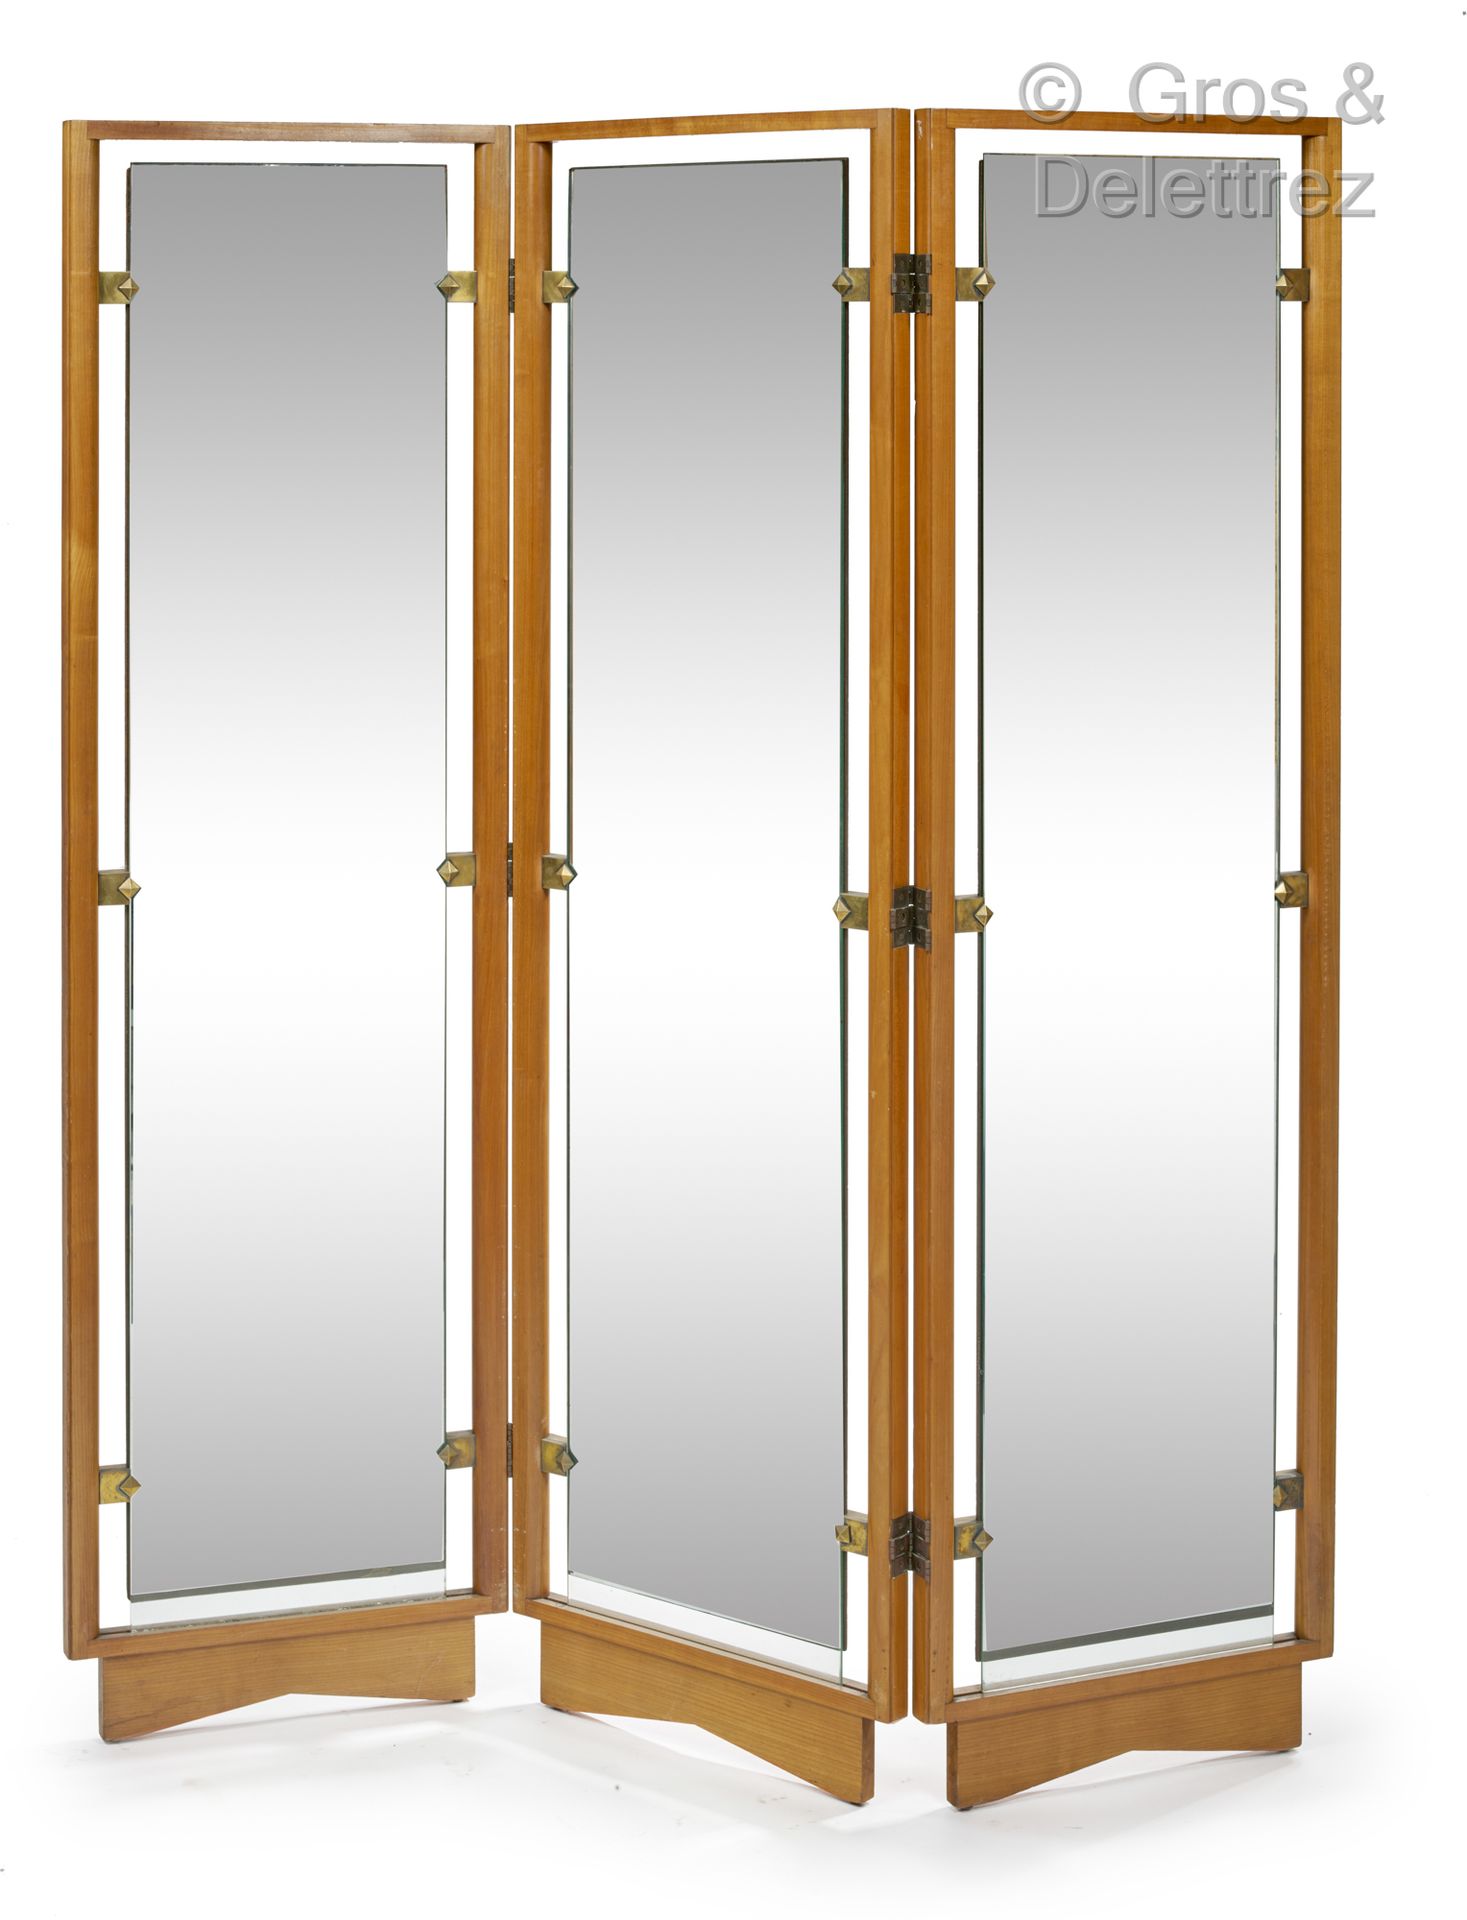 Null 马克西姆-奥德 (1910-1991)

樱桃木框架的屏风，围着长方形的镜子，镀金的黄铜扣件下有尖尖的方块。

约1945-1950年

高：174厘&hellip;